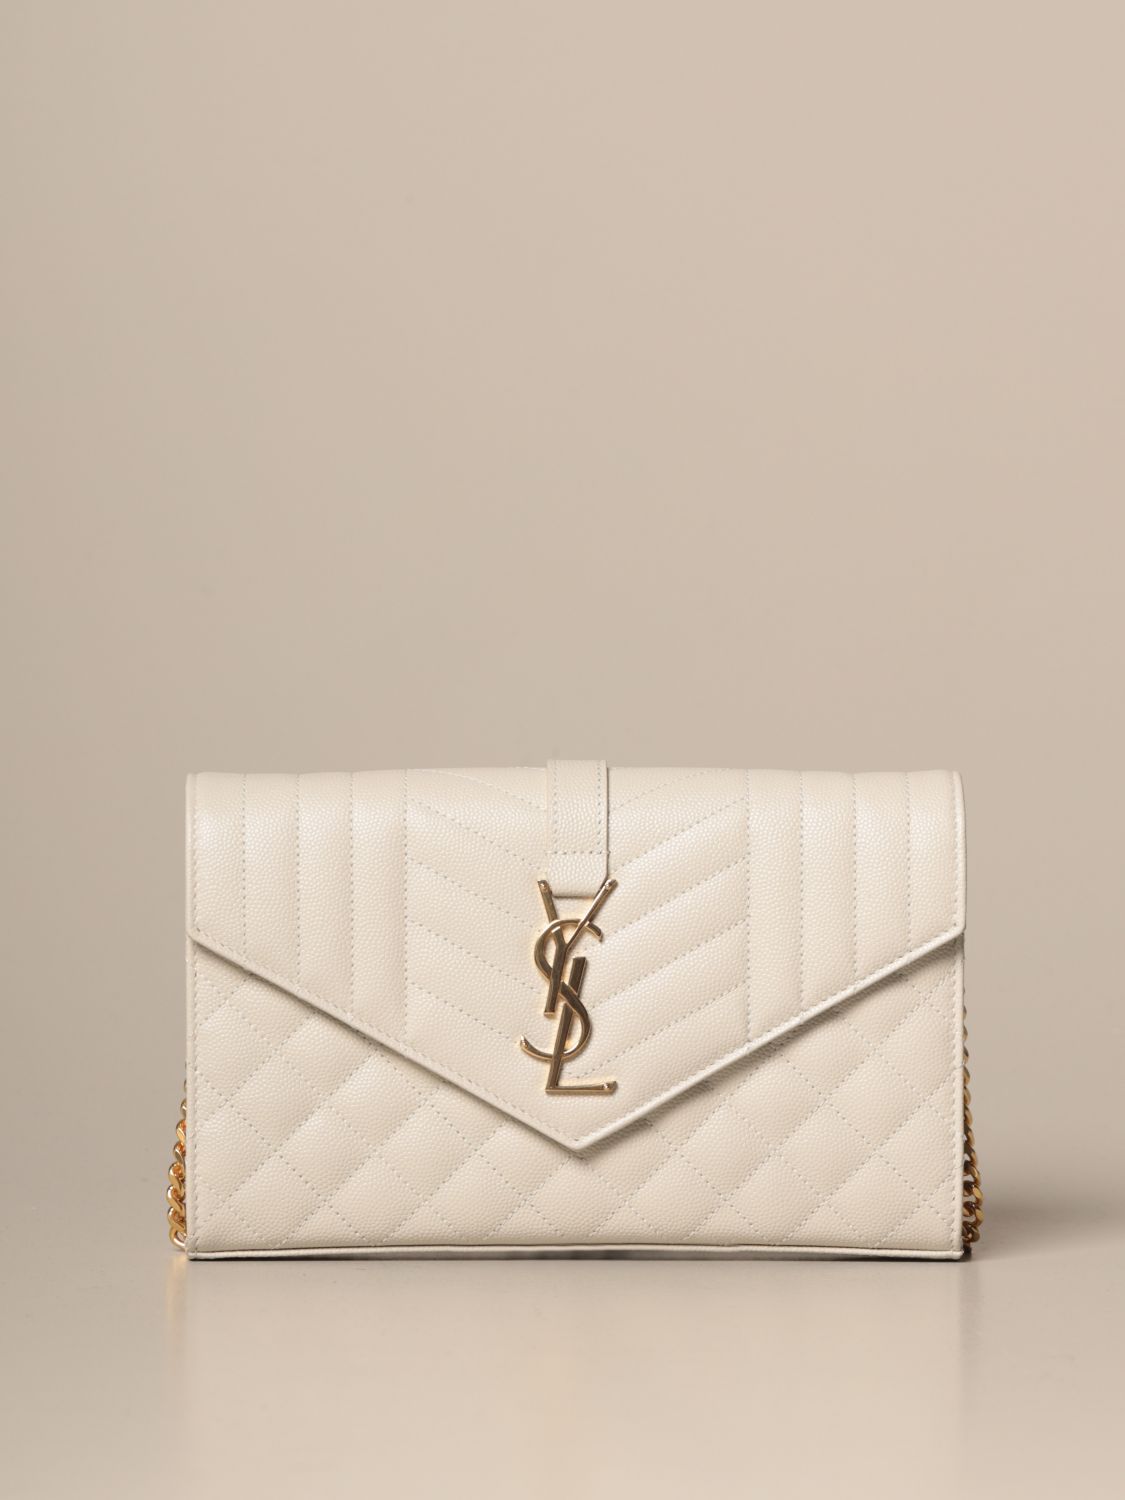 Monogram Saint Laurent bag in grain de poudre leather | Crossbody Bags ...